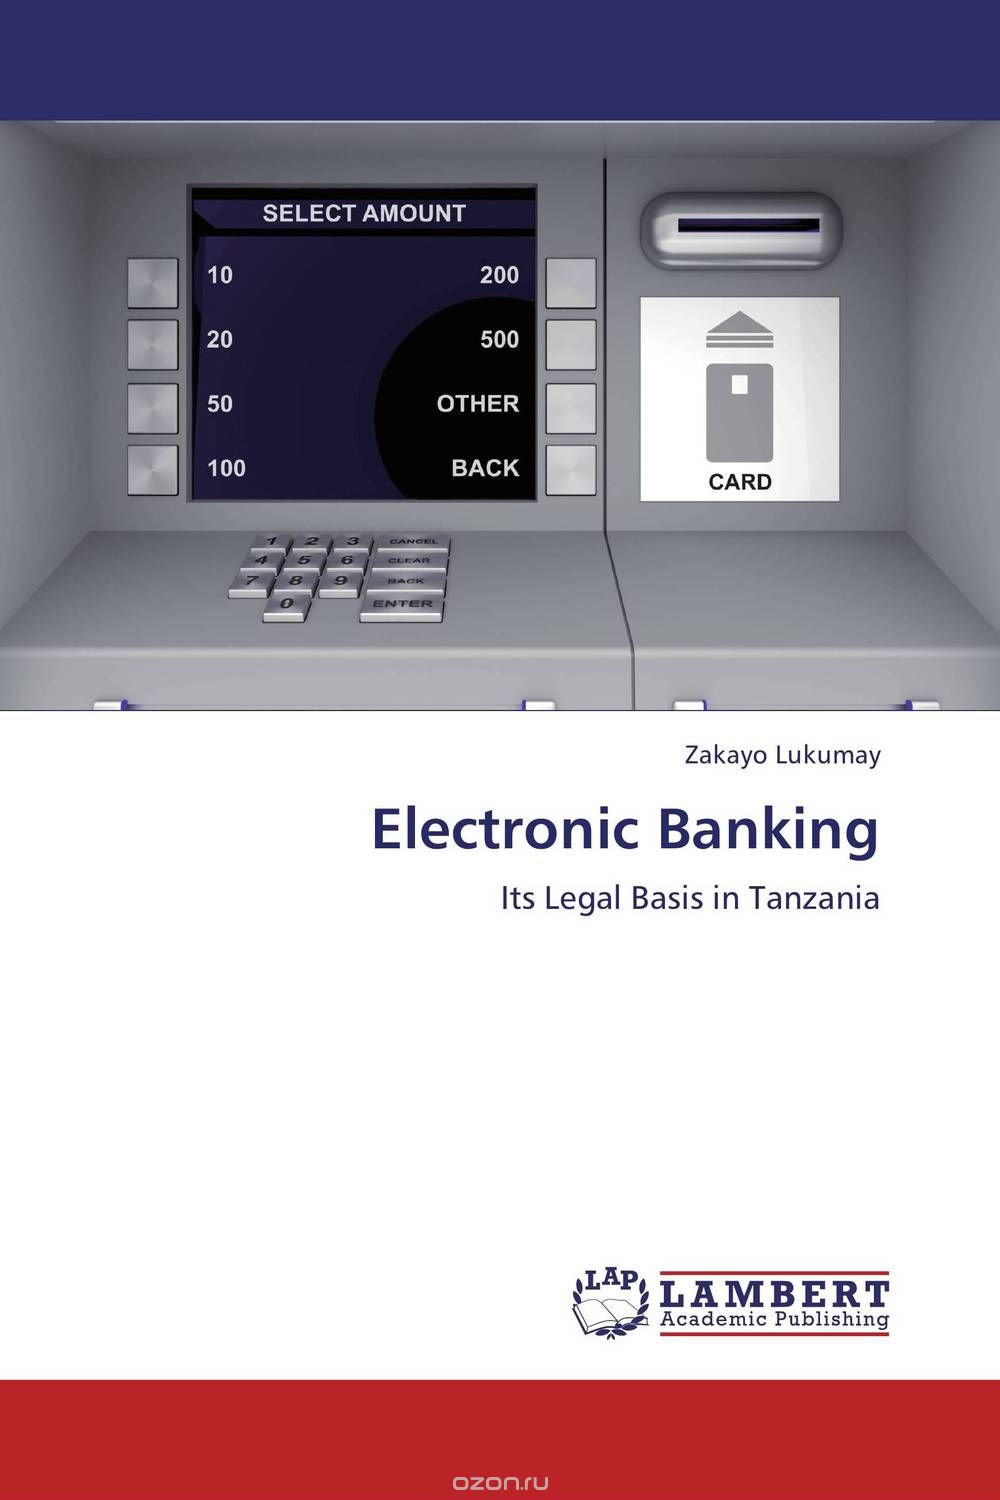 Скачать книгу "Electronic Banking"